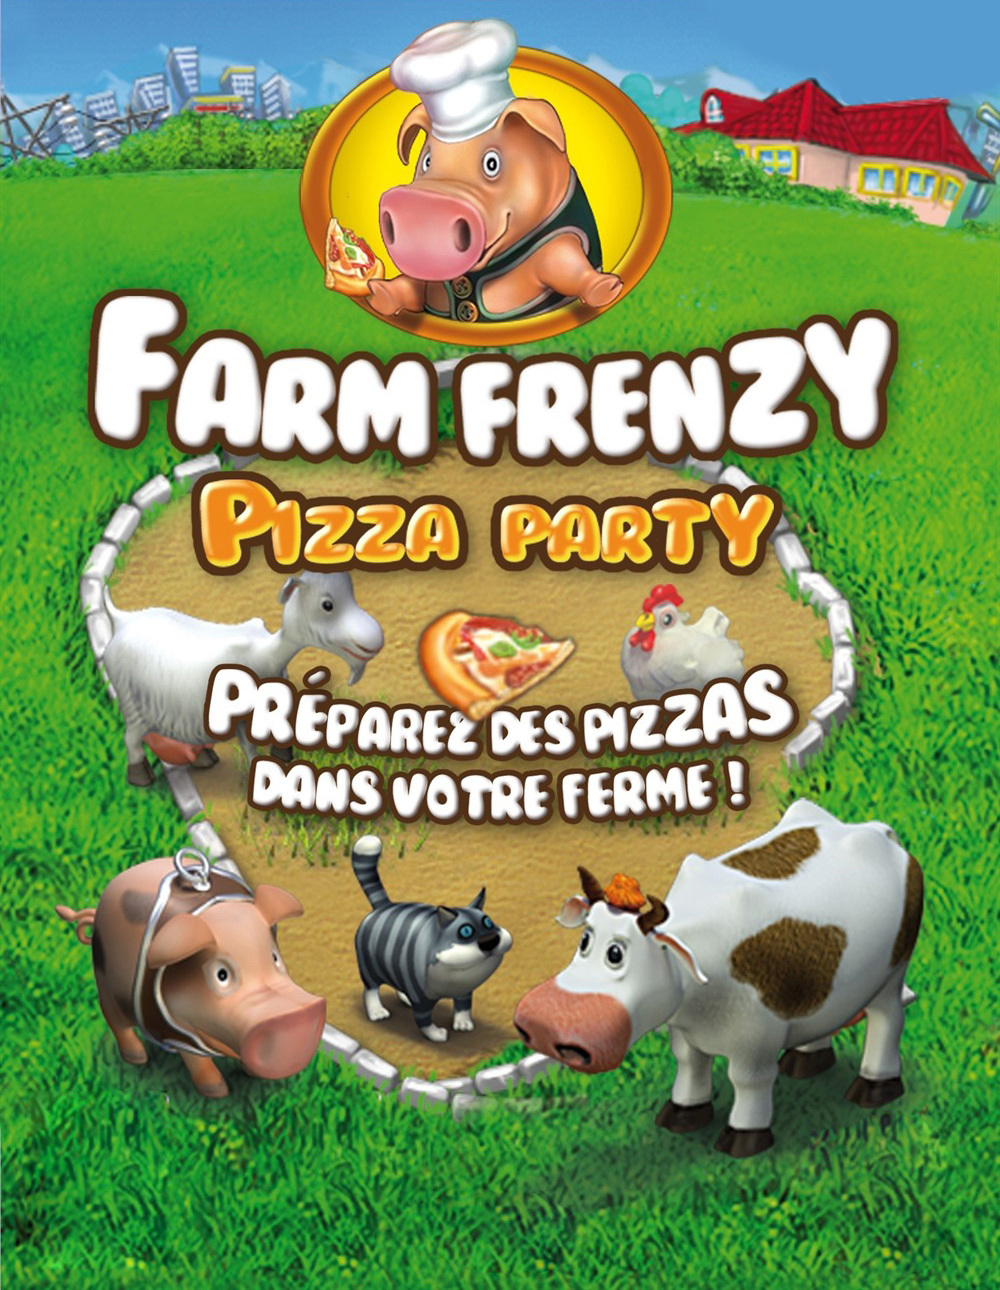 играть веселая ферма печем пиццу полная версия бесплатно онлайн фото 54